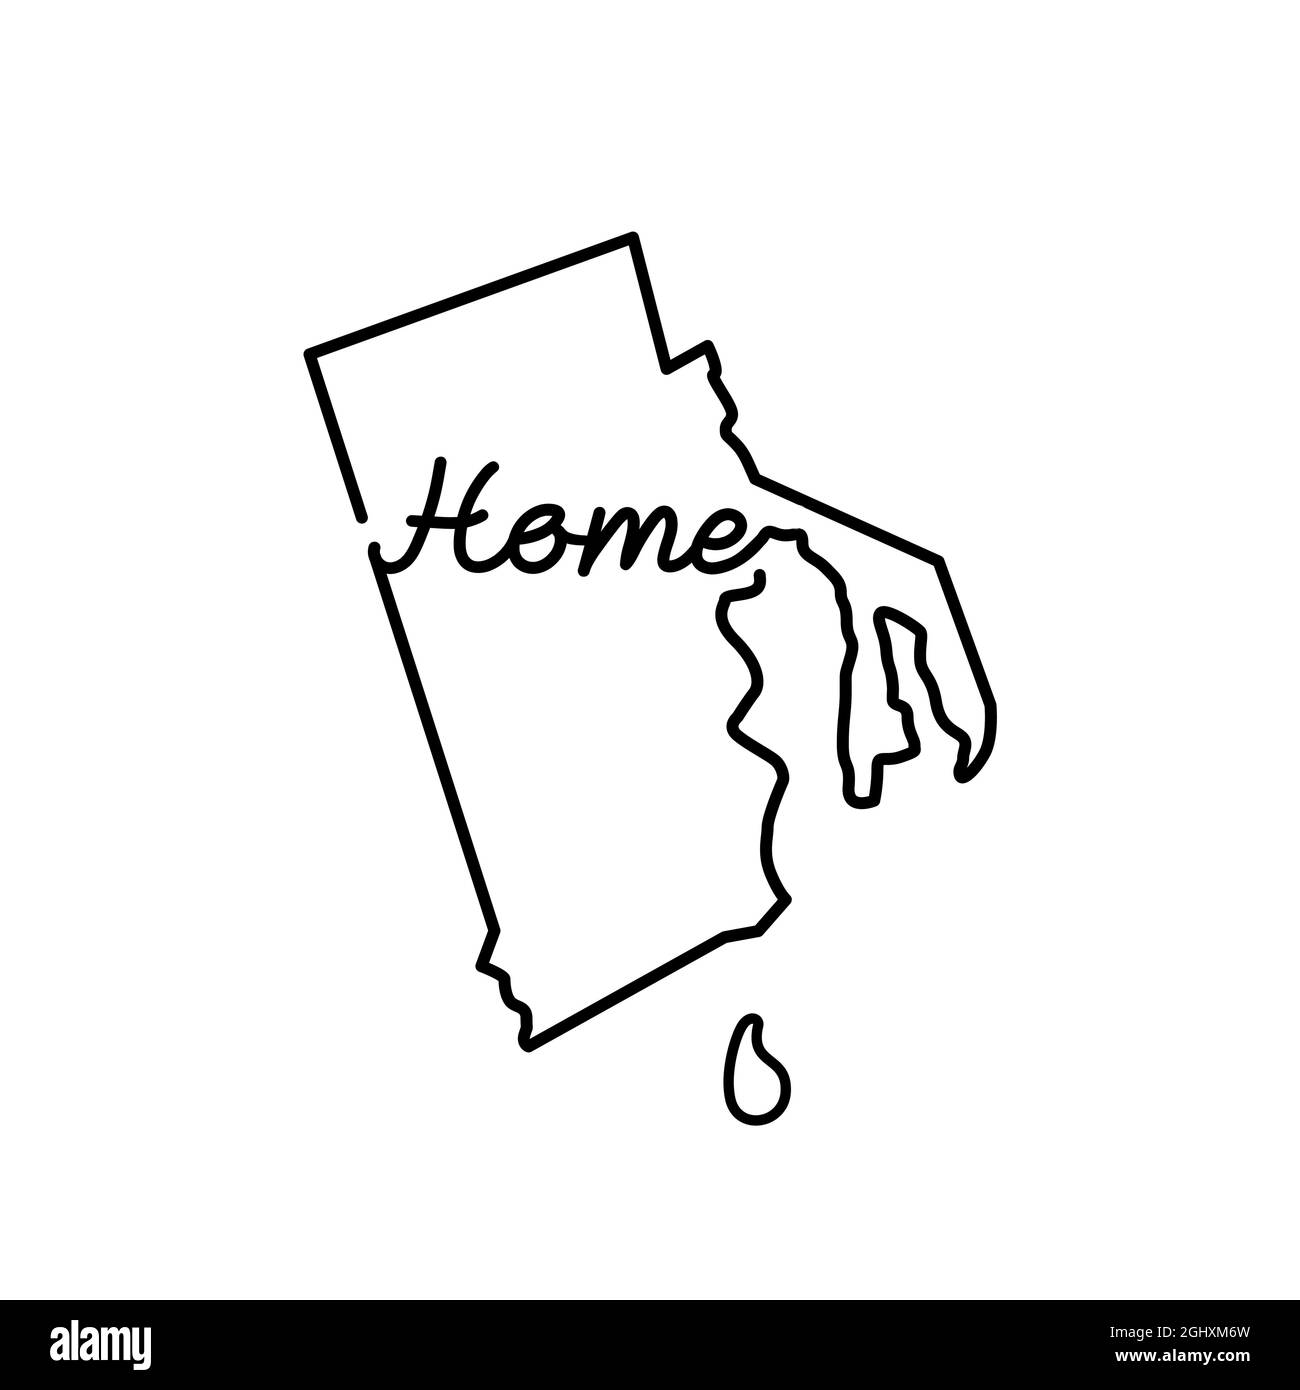 Carte des États-Unis du Rhode Island avec le mot D'ACCUEIL manuscrit. Dessin de ligne continue de signe de maison patriotique. Un amour pour une petite patrie. Interio Illustration de Vecteur